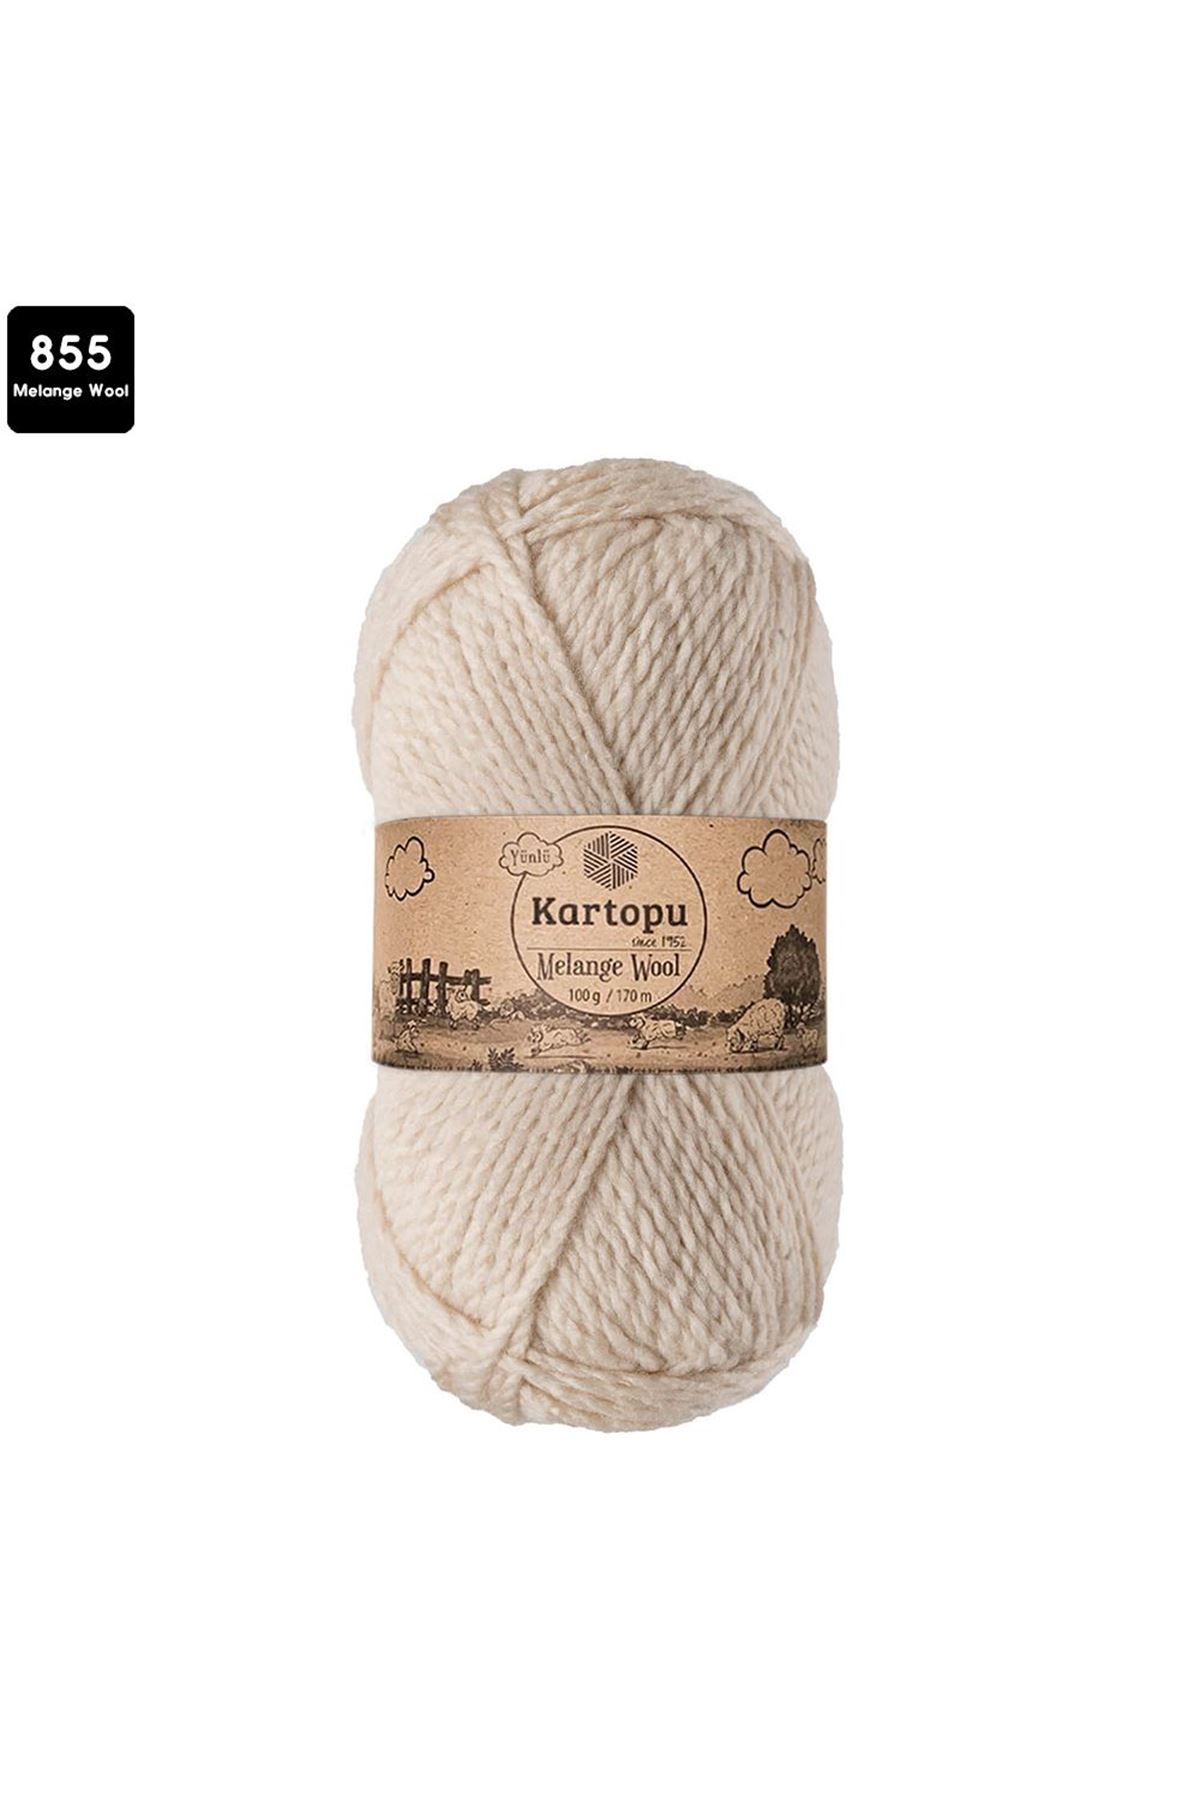 Kartopu Melange Wool Renk No:855